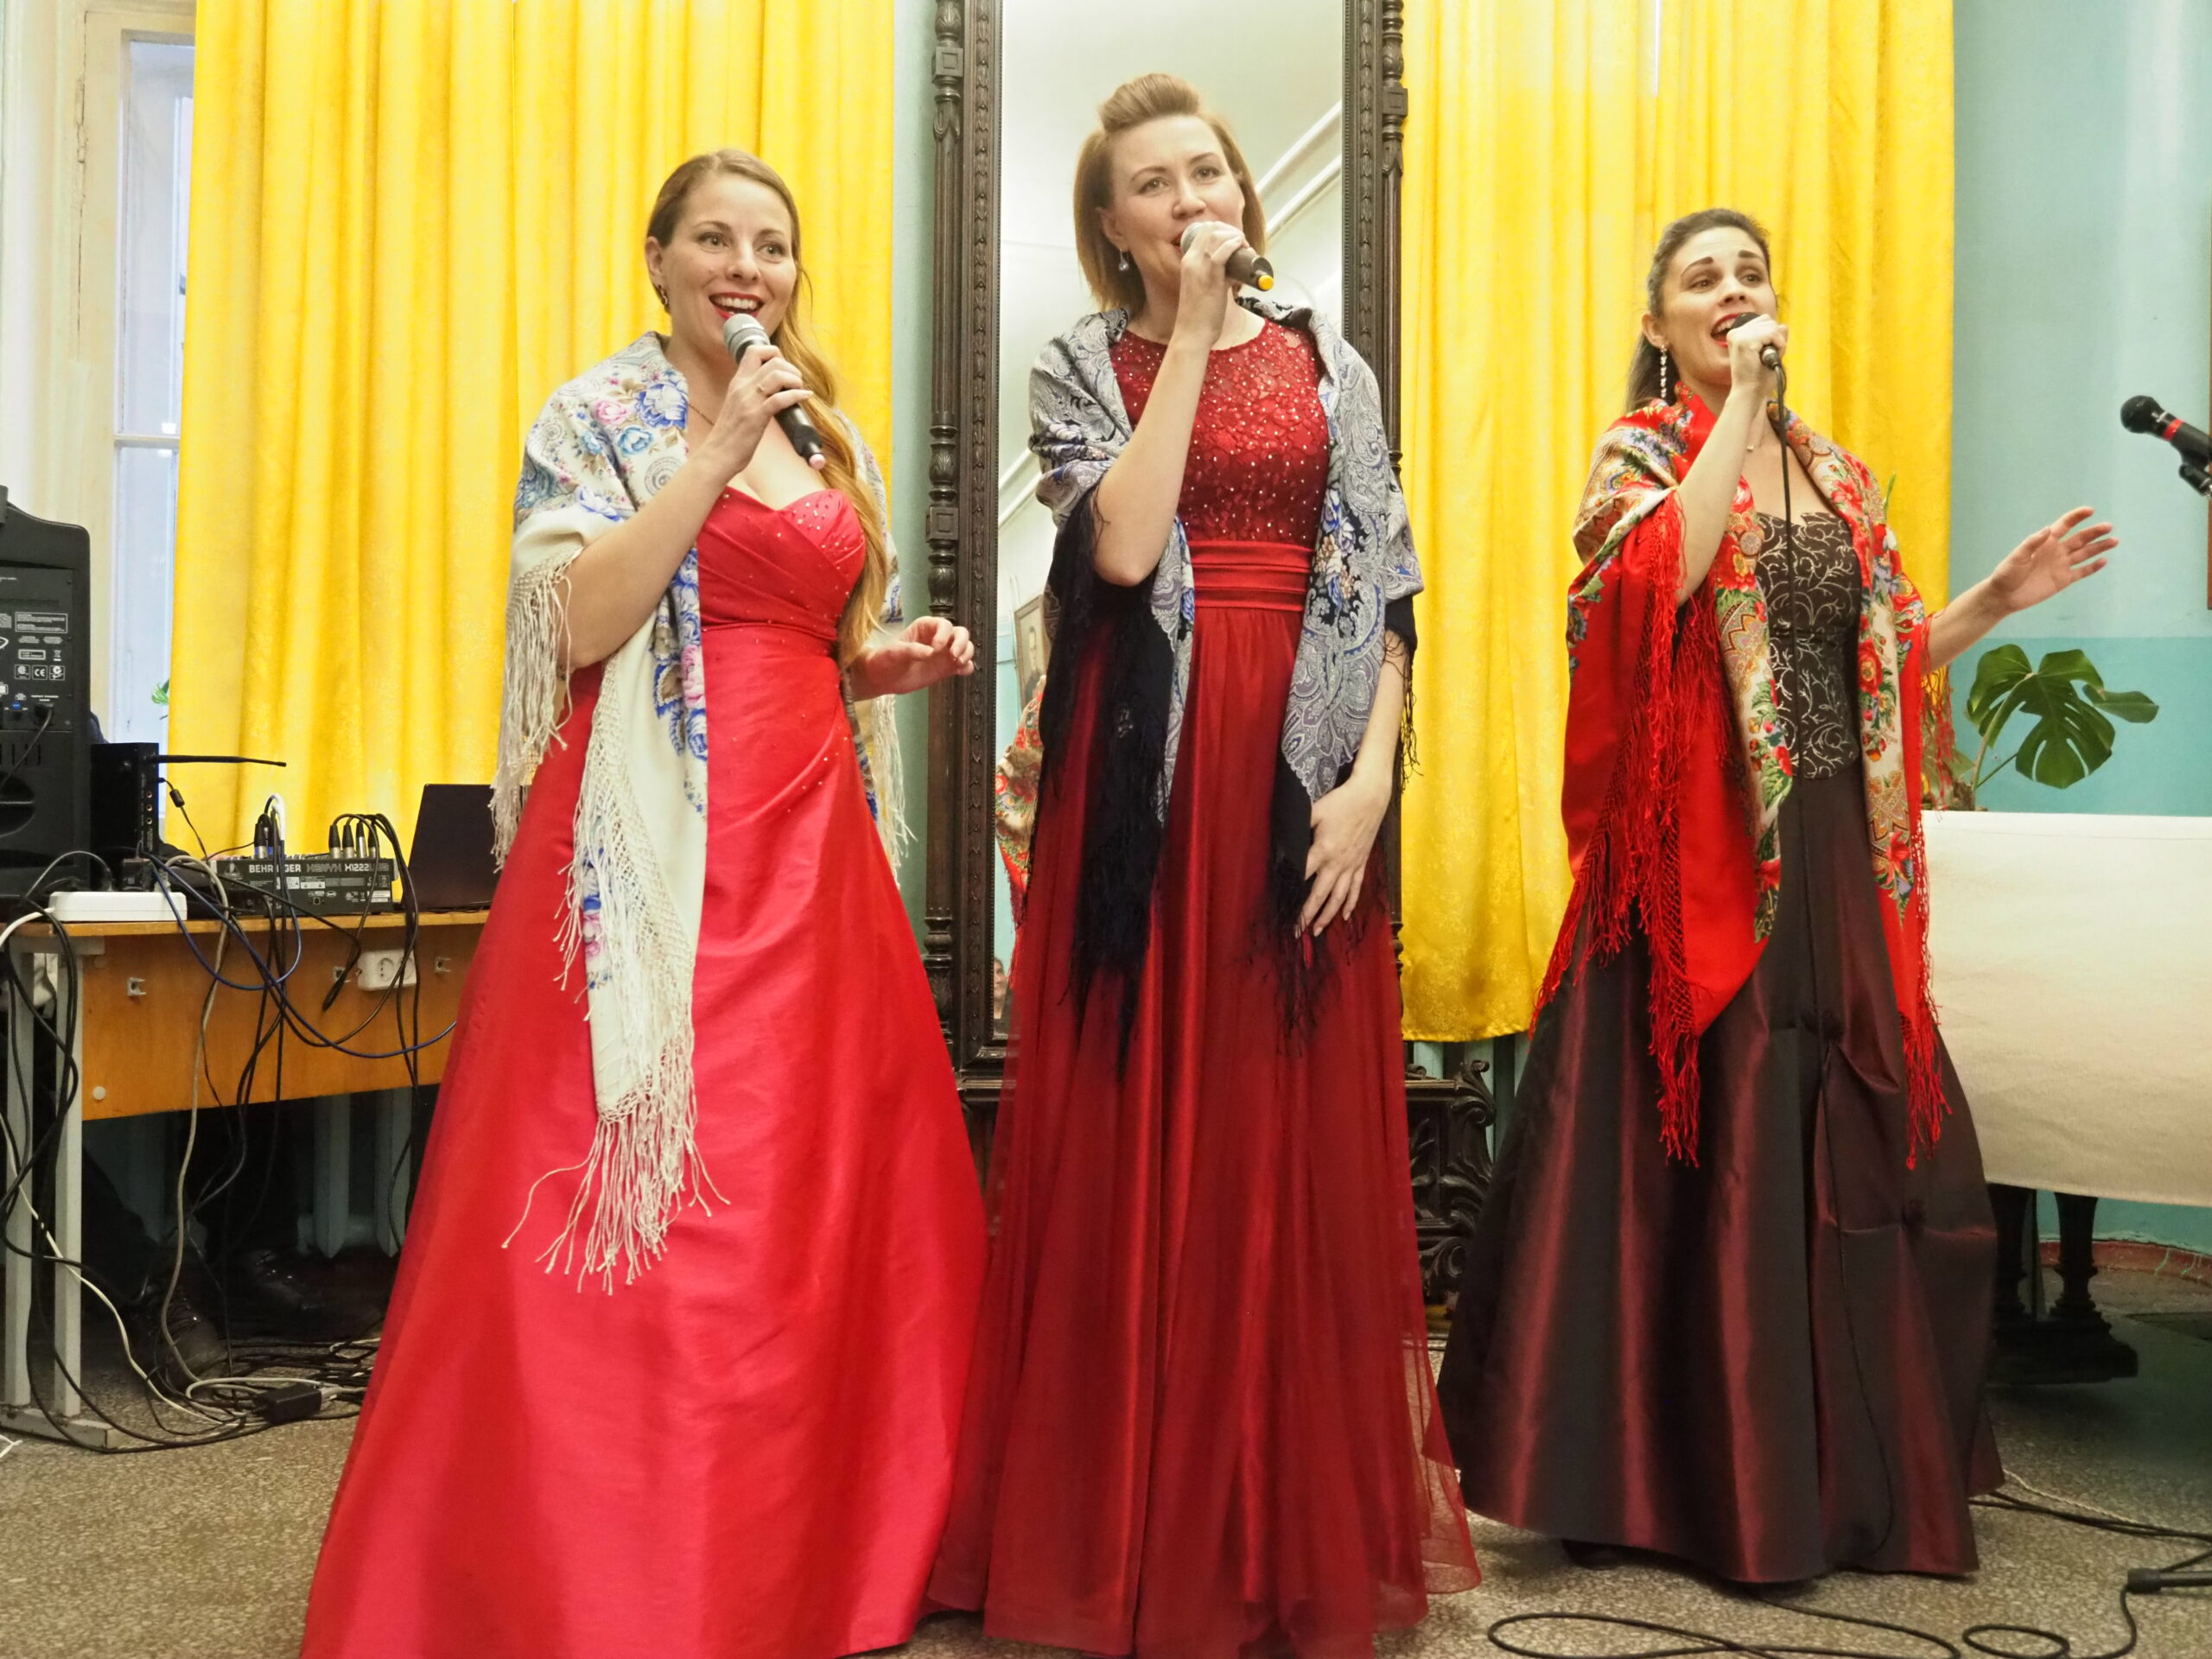 Музыкальный коллектив «Невская опера» дал концерт для пациентов и сотрудников Военно-медицинской академии